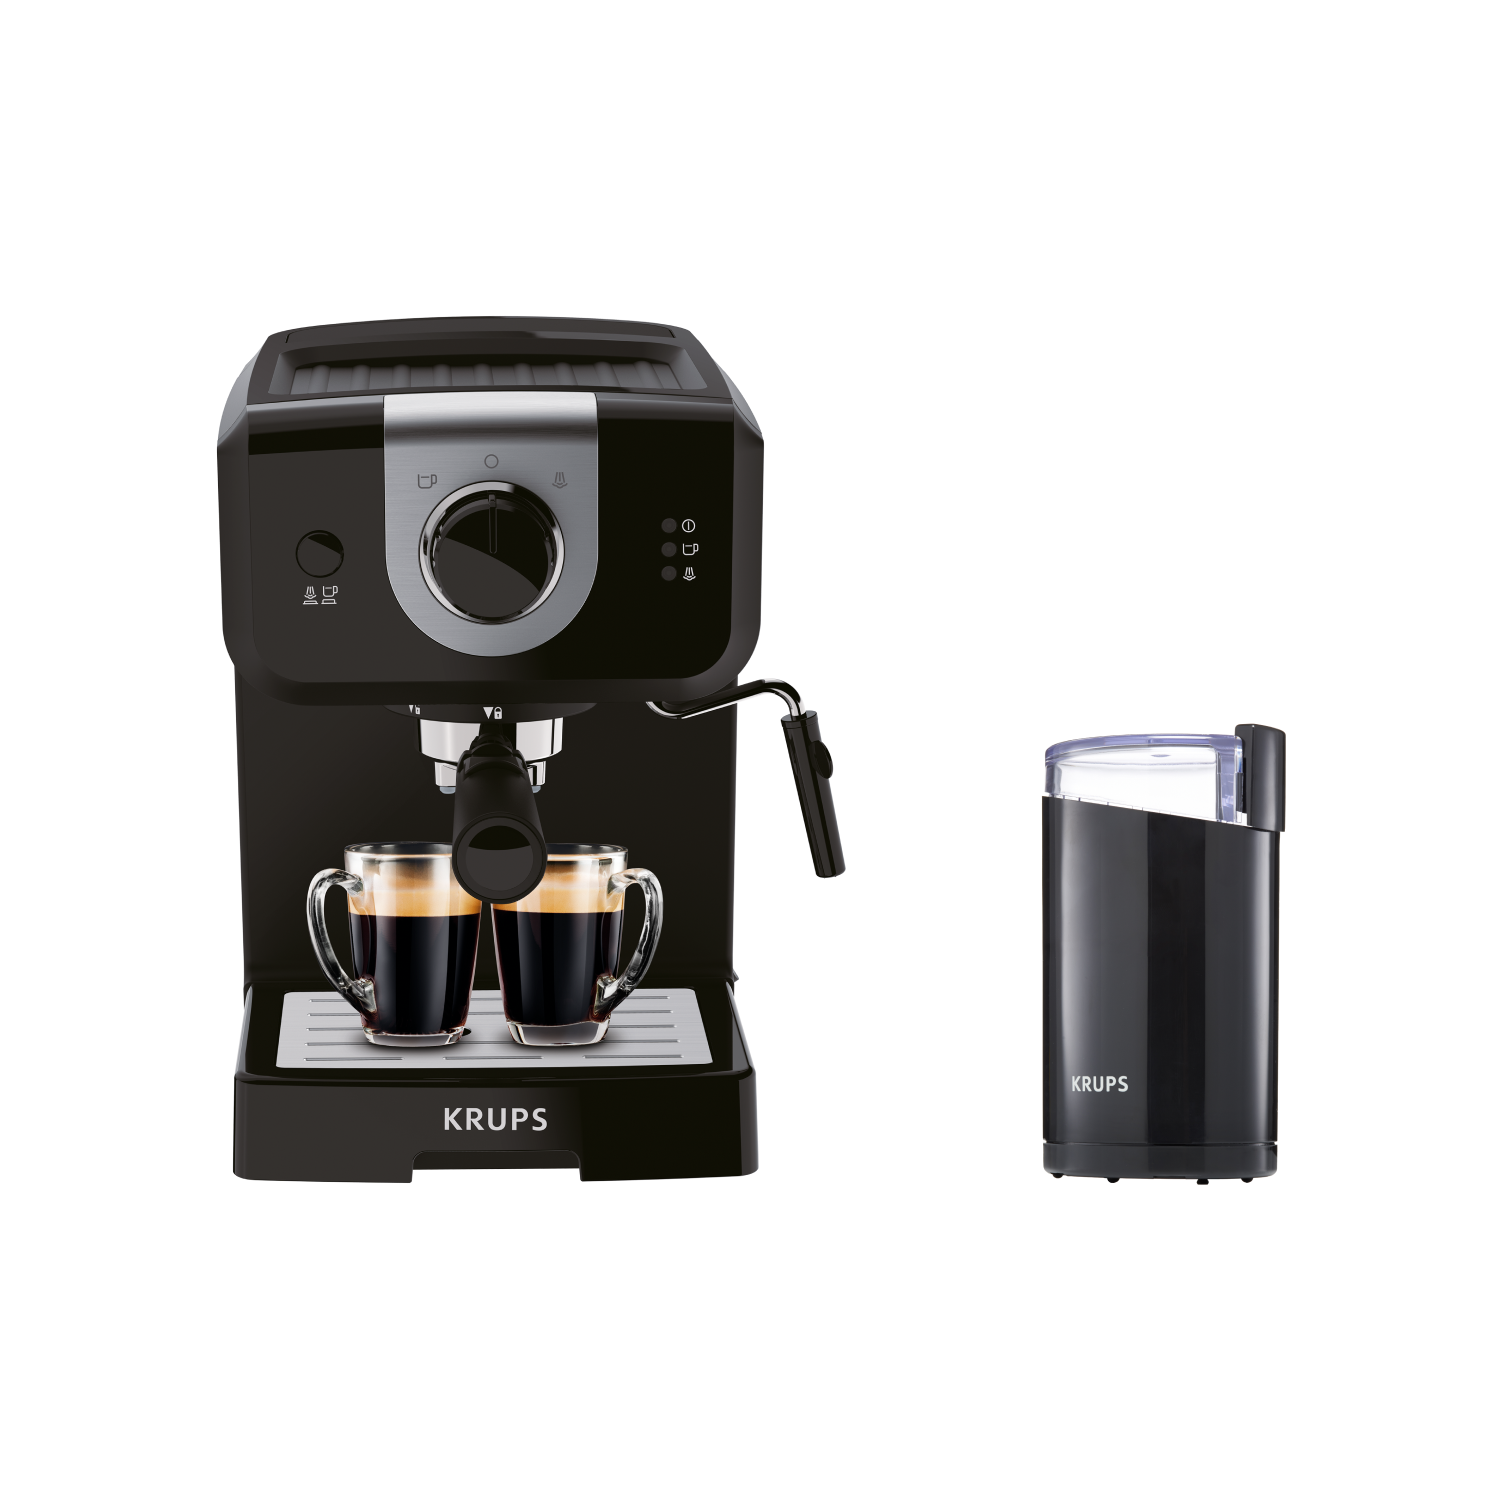 Рожковая кофеварка Opio XP320830 с кофемолкой Krups Fast Touch F2034232 рожковая кофеварка virtuoso xp444c10